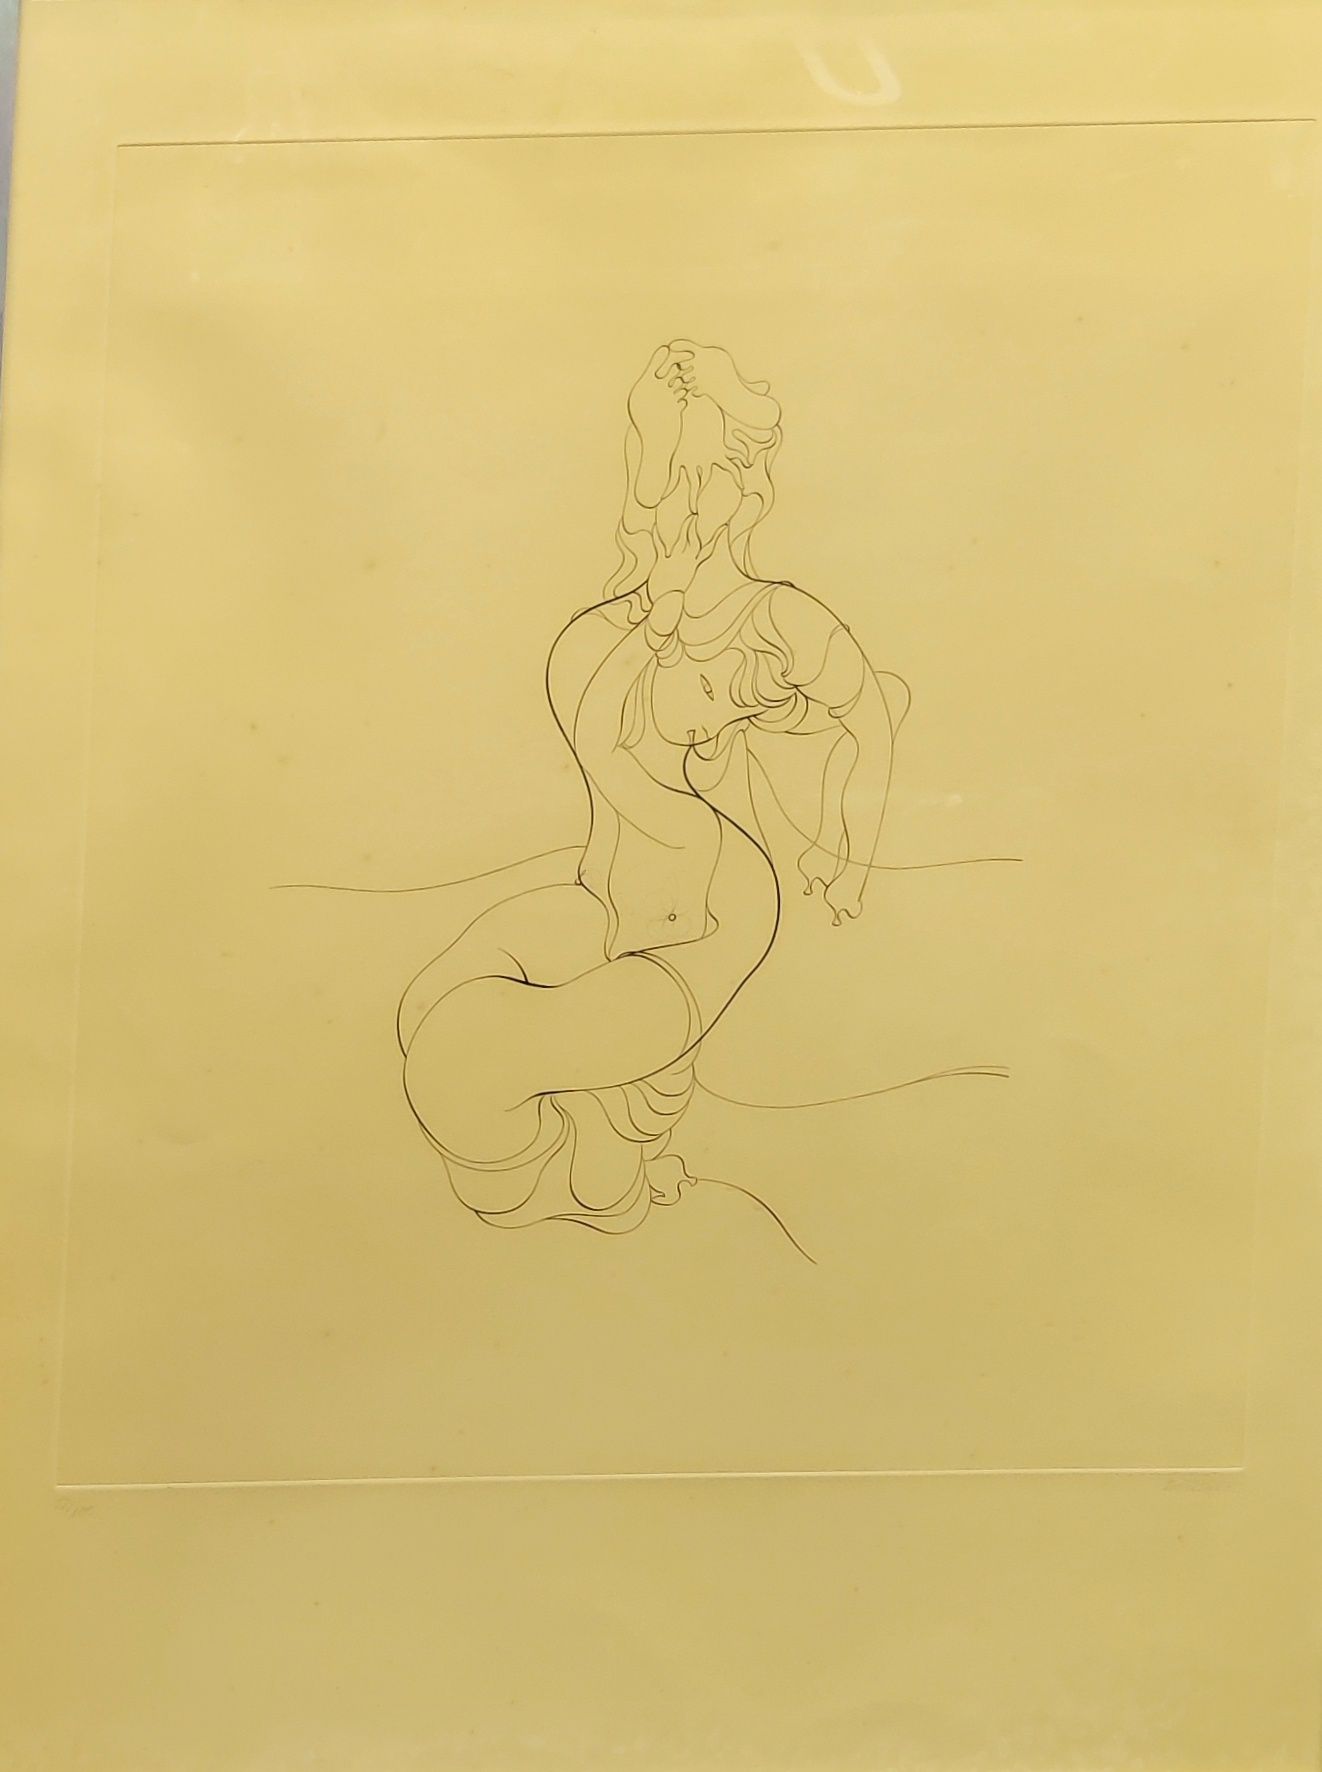 Null 汉斯-贝尔梅尔（1902-1975）无标题纸上蚀刻画，右下方有签名，左下方有编号28/100 64 x 50 cm

发黄的纸张